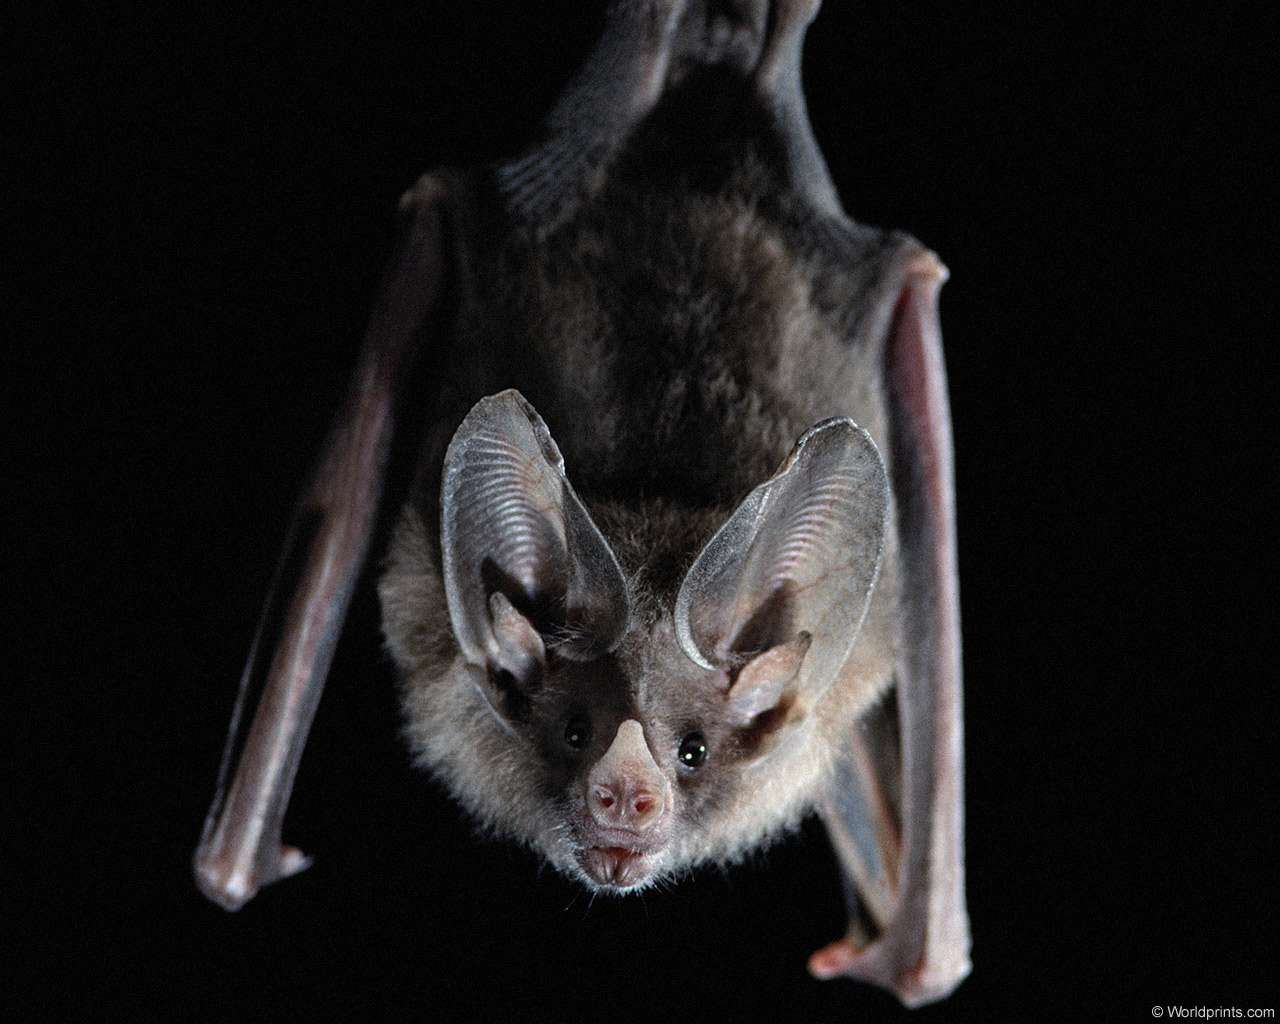 Bat hanging upside down image